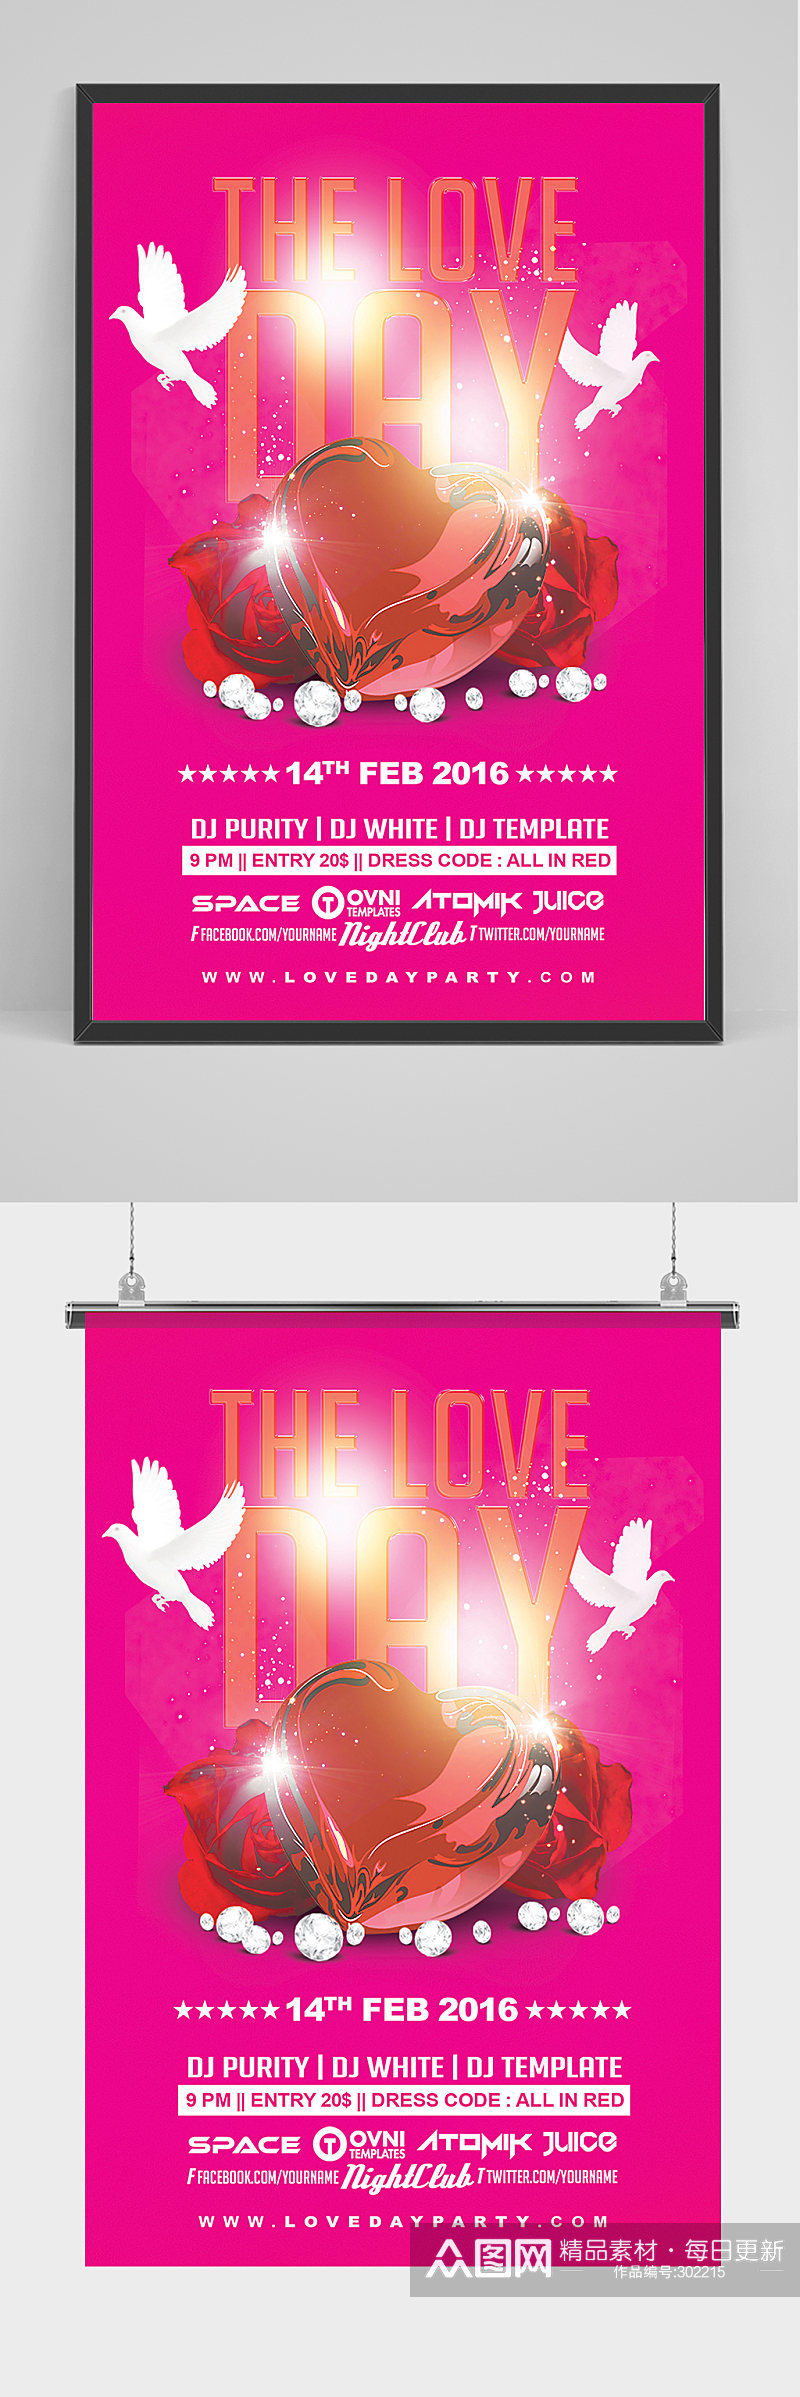 粉色精品酒吧海报设计素材